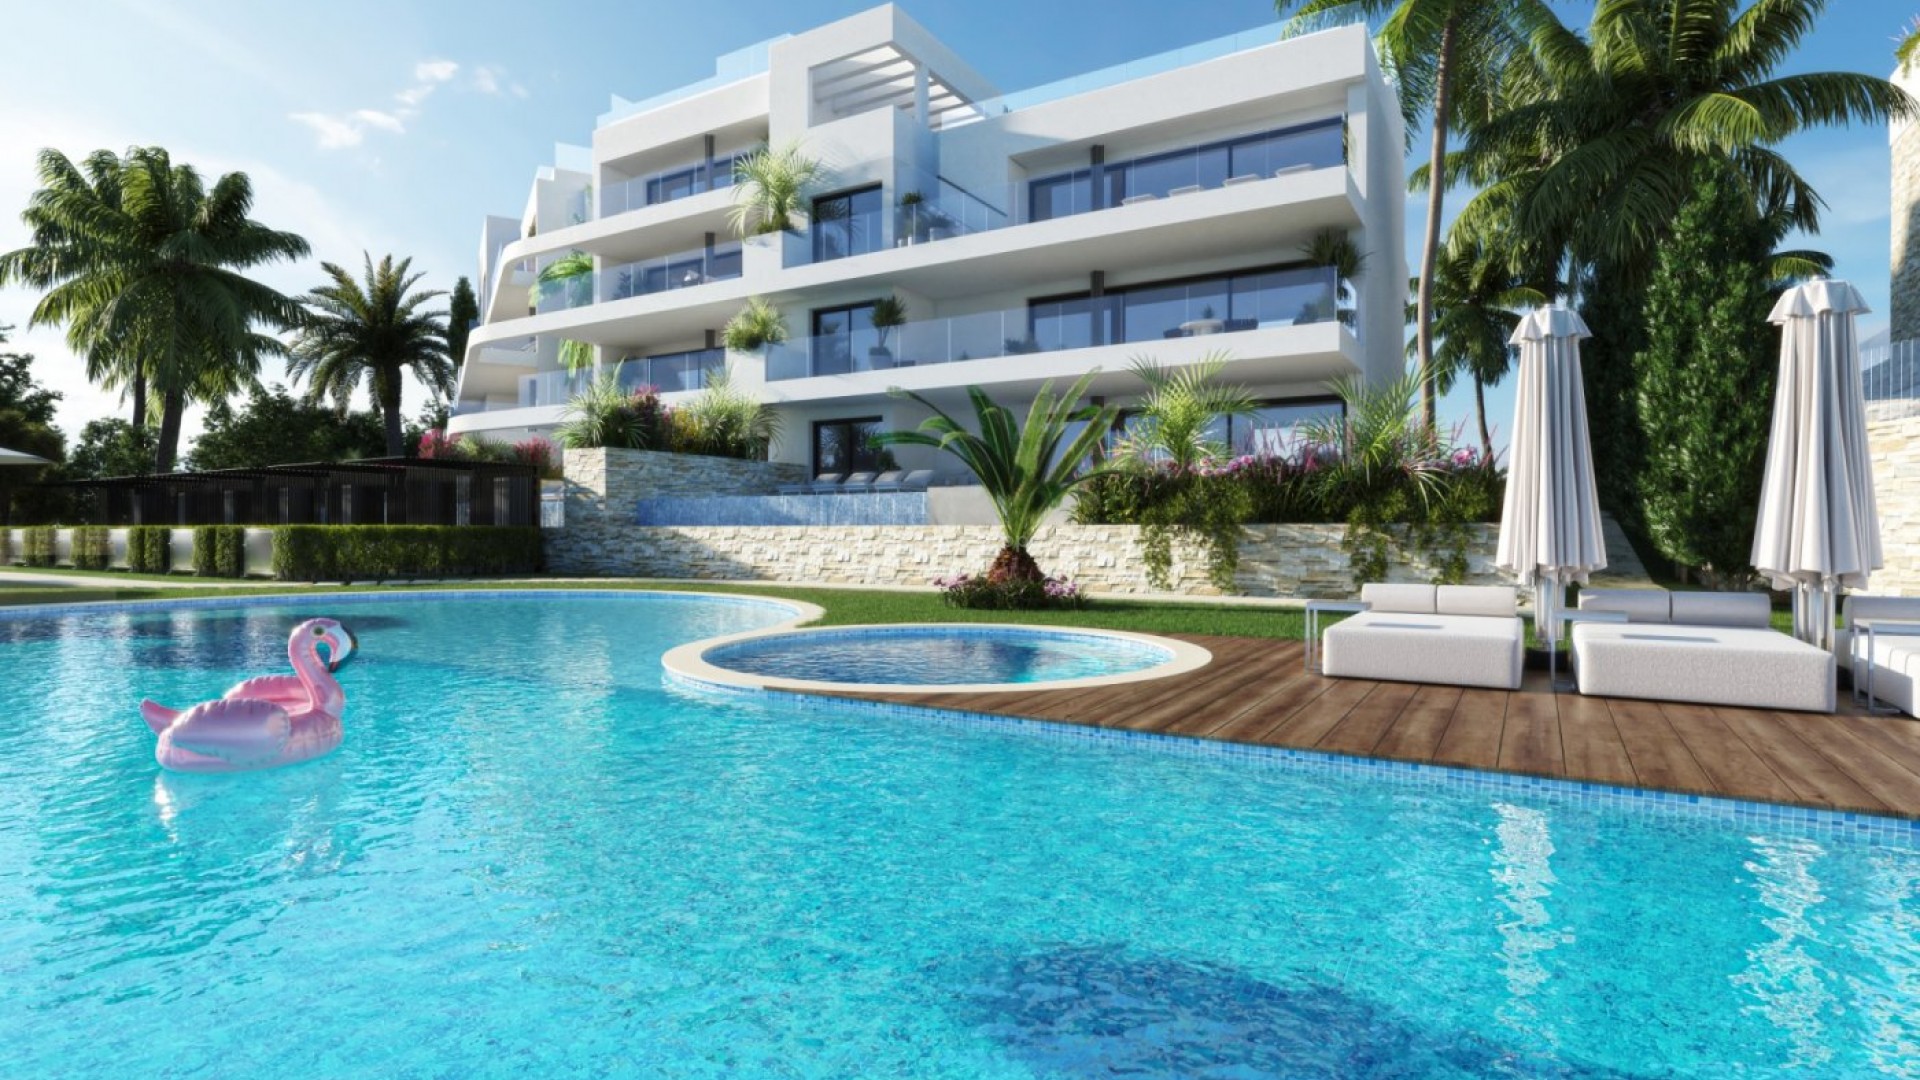 Luksus-leiligheter og toppleiligheter i Las Colinas Golf, Alicante, 3 soverom, 3 bad, svømmebasseng, smarthus, terrasser og solarium